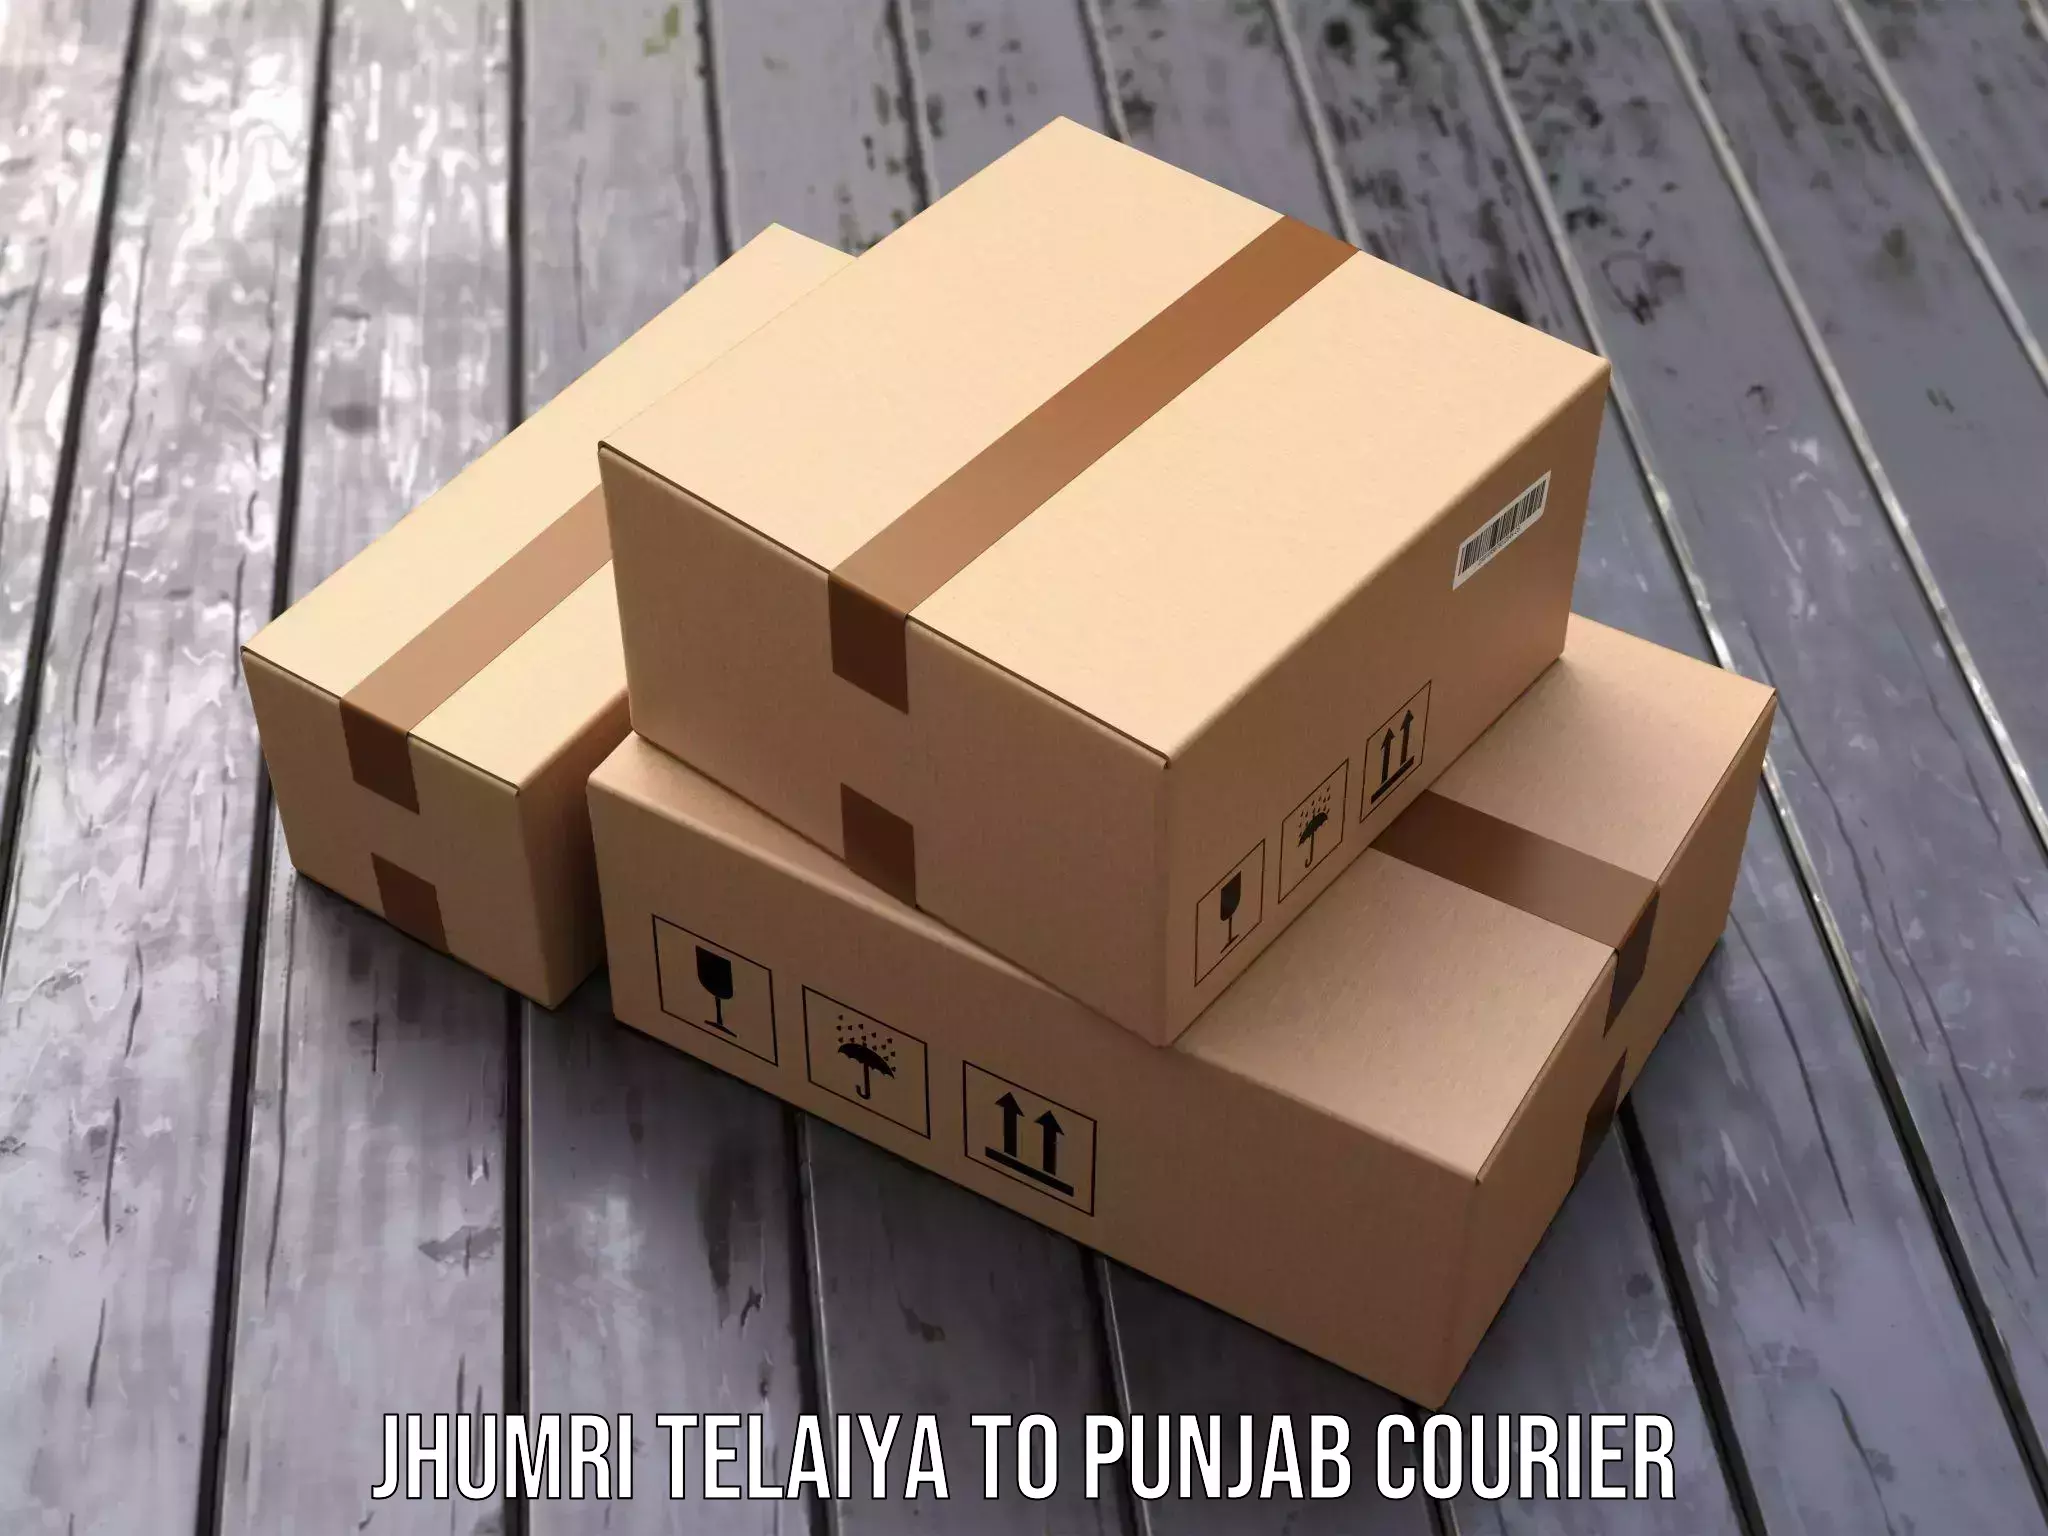 Quality courier partnerships Jhumri Telaiya to Central University of Punjab Bathinda